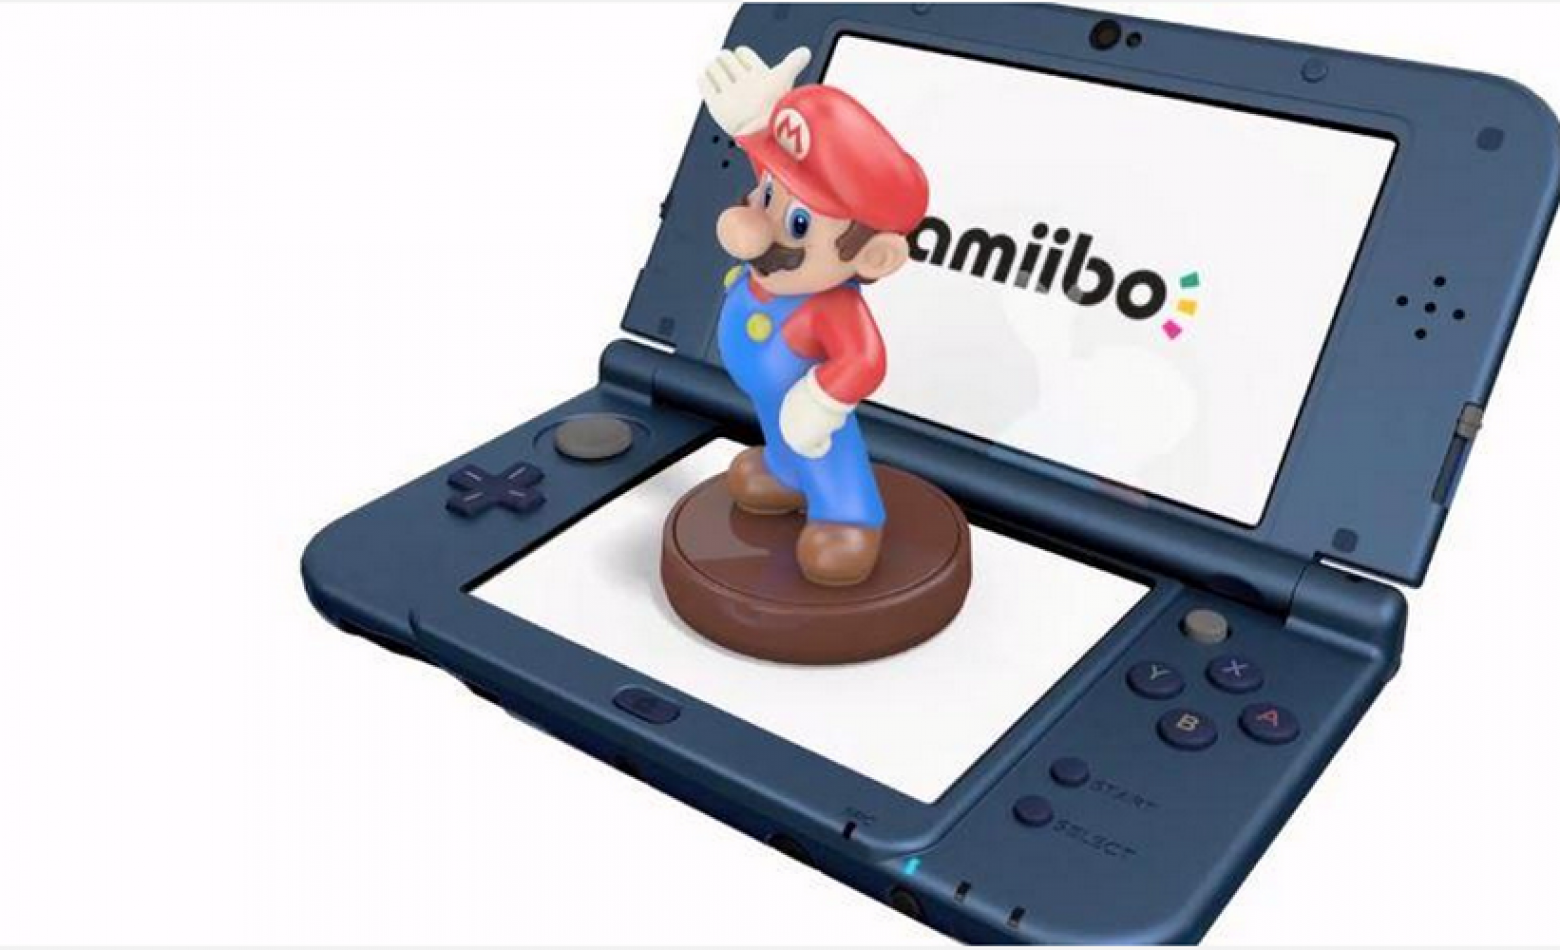 Japão: apesar de recorde negativo em vendas, Nintendo é só sorrisos